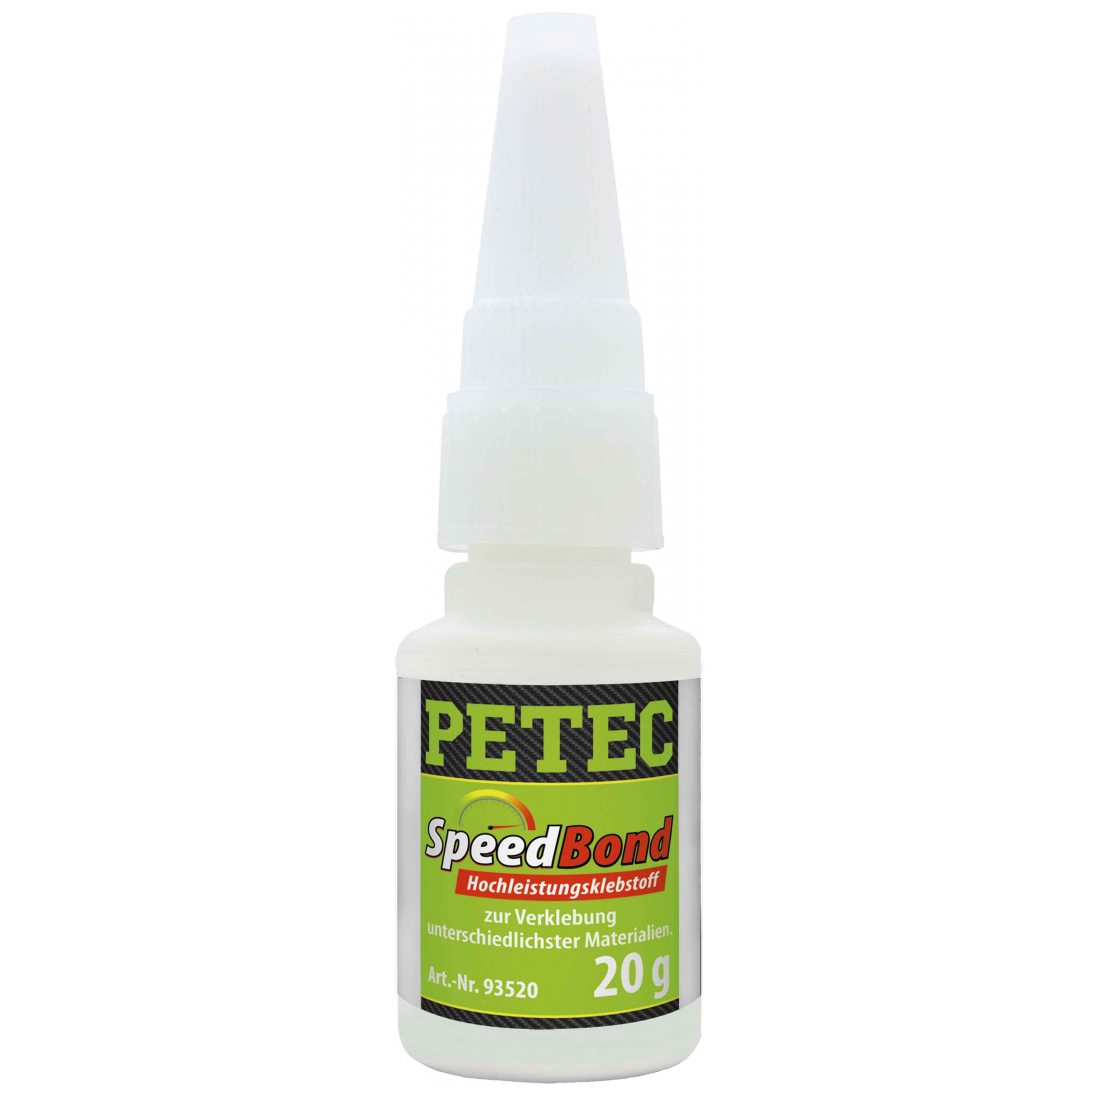 Petec Speedbond Hochleistungsklebstoff 20 ml 93520